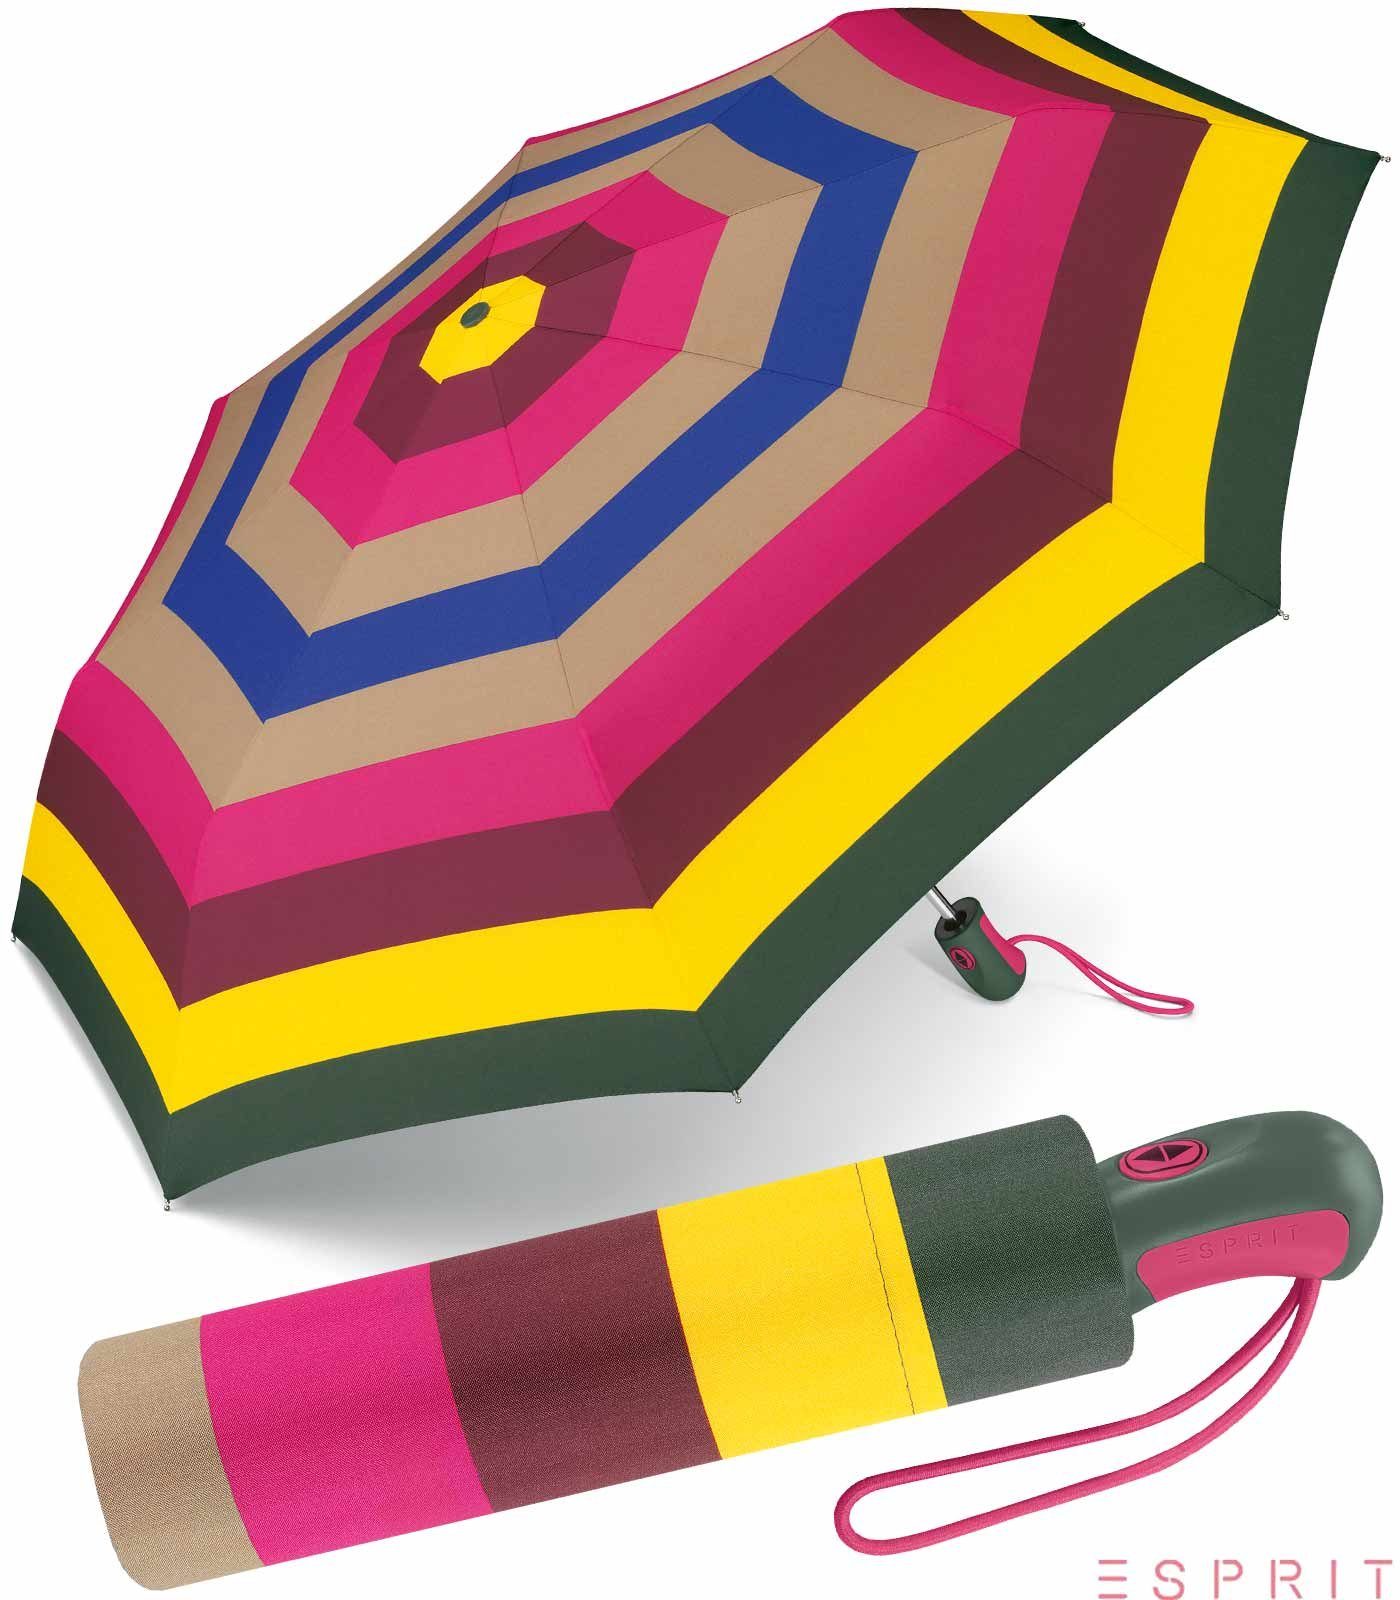 Esprit Taschenregenschirm schöner Schirm für Damen mit Auf-Zu Automatik, das besondere Design als Eyecatcher